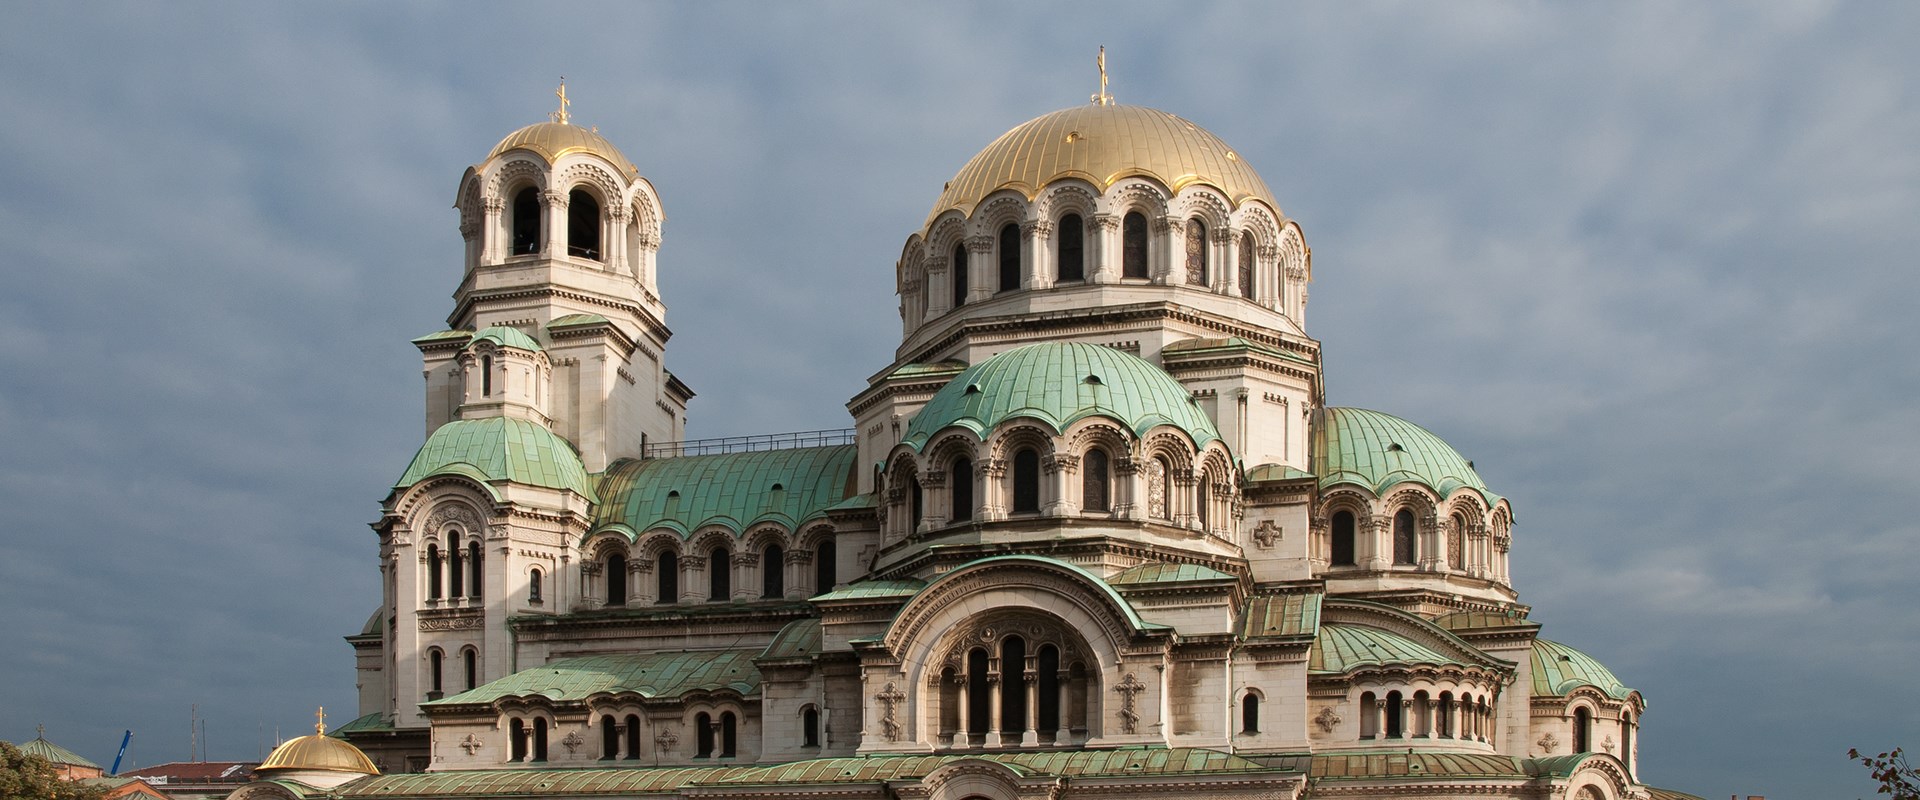 The Alexander Nevsky Cathedral - 